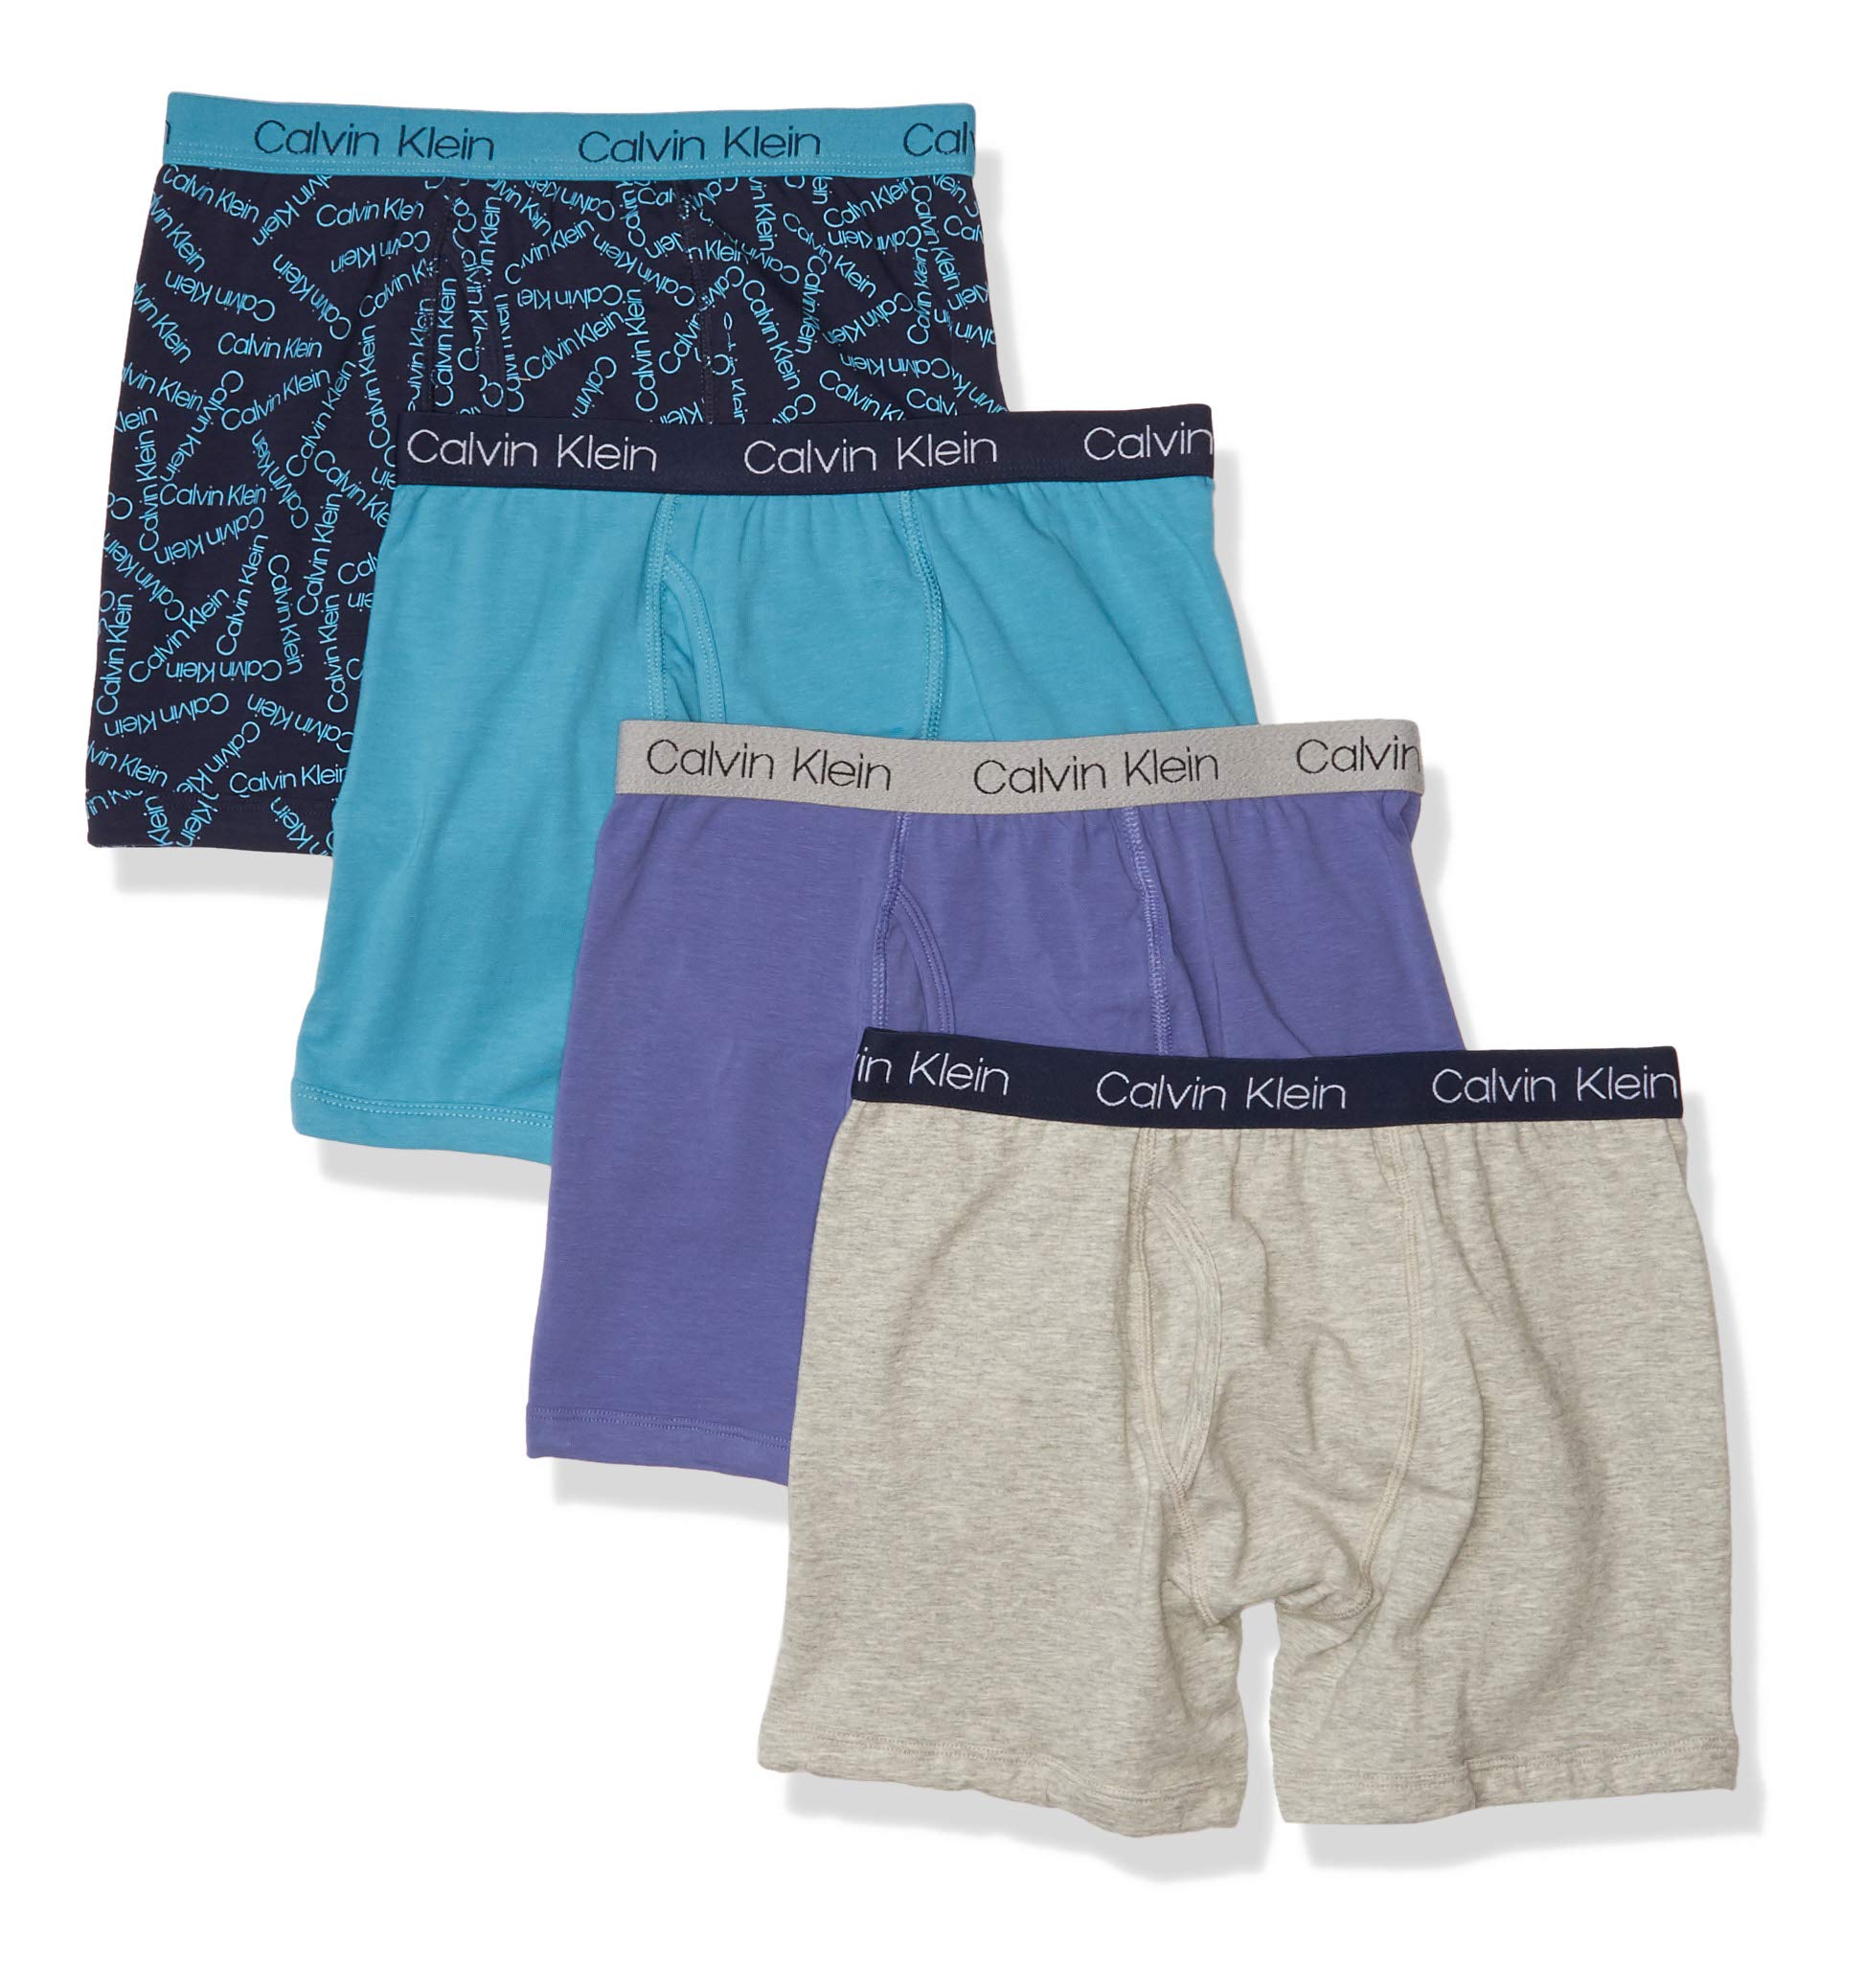 Calvin Klein Boys' Underwear 4 Pack Boxer Brief Value Pack